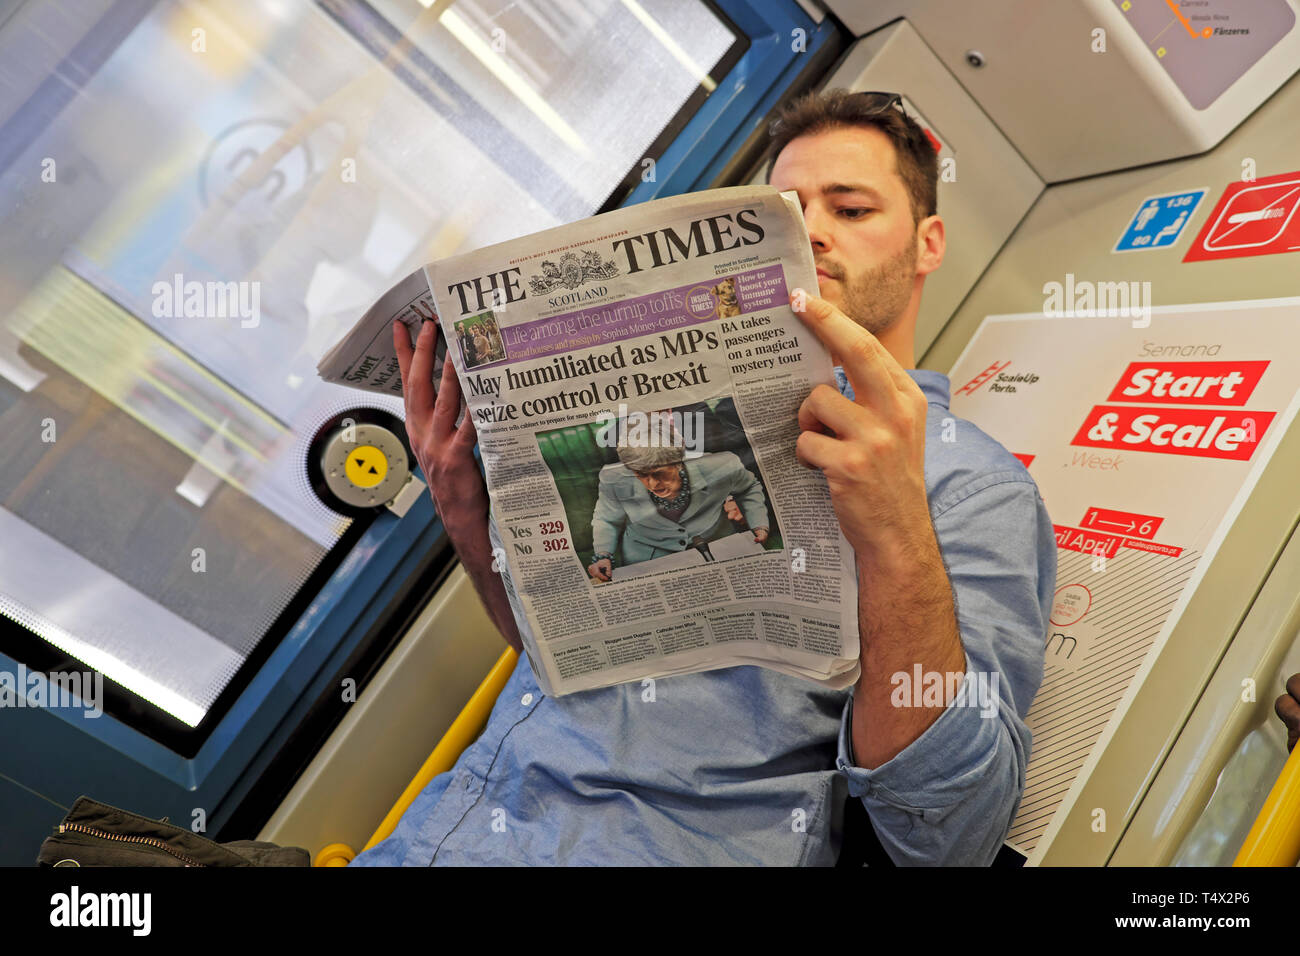 Mann Lesung am Bahnhof in Europa 'May gedemütigt als MPs Kontrolle der Brexit" der Zeitung The Times Schlagzeile vom 26. März 2019 Porto Portugal KATHY DEWITT nutzen Stockfoto